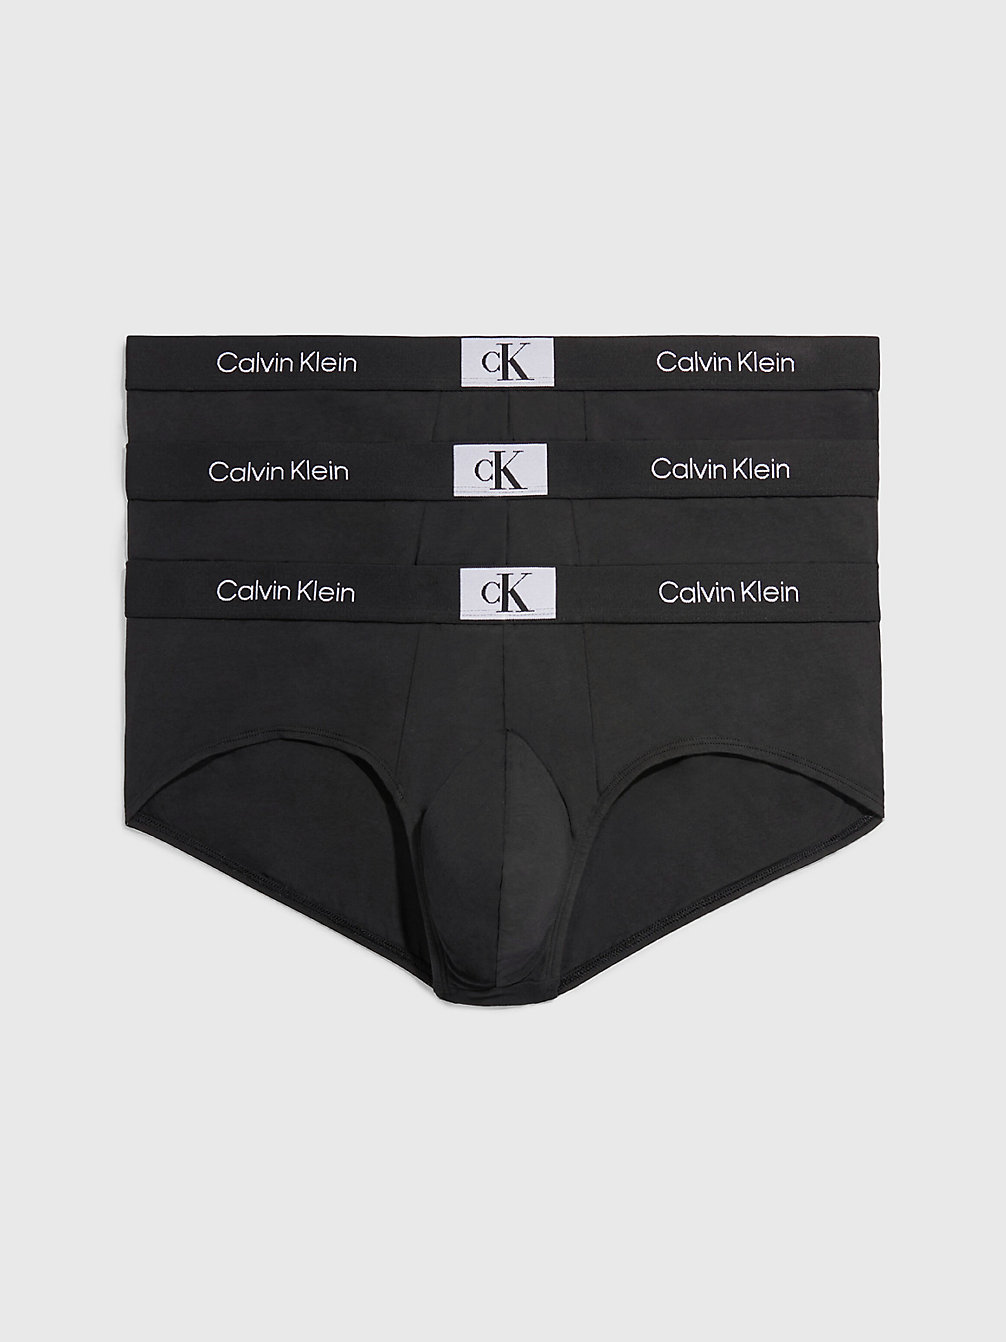 BLACK/ BLACK/ BLACK > Plus Size 3 Pack Briefs - Ck96 > undefined женщины - Calvin Klein